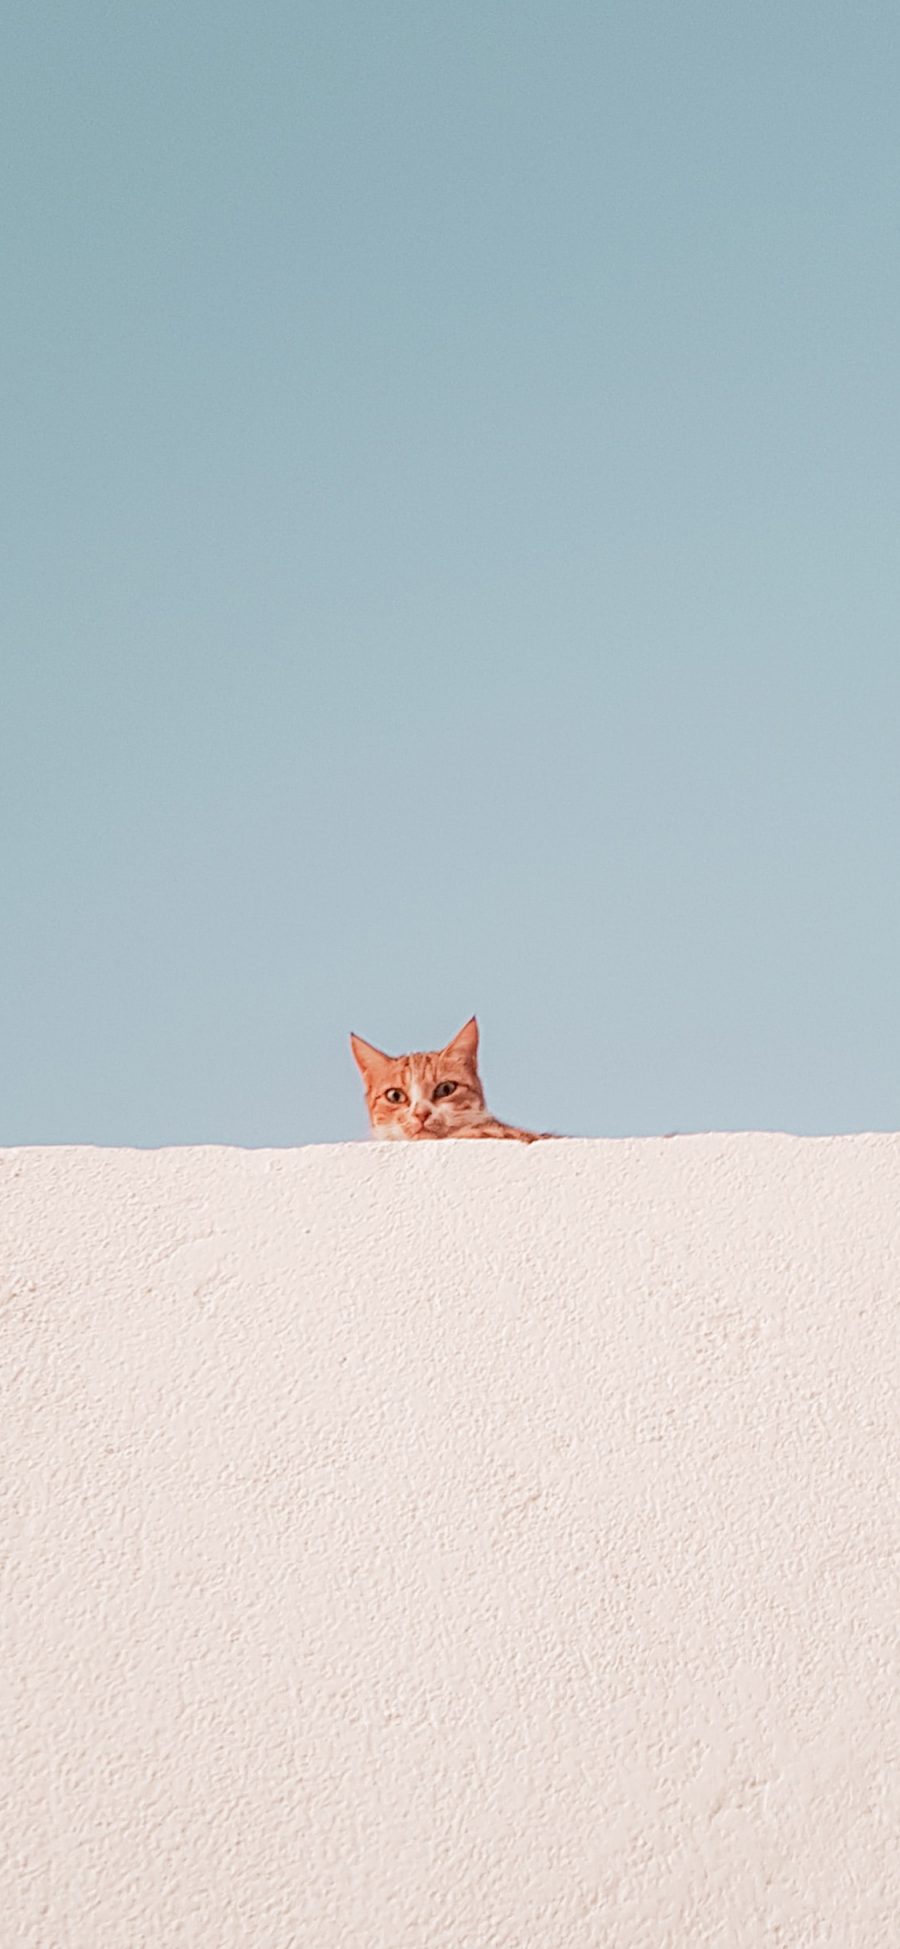 [2436×1125]墙壁 蓝天 橘猫 猫咪 幼崽 苹果手机壁纸图片